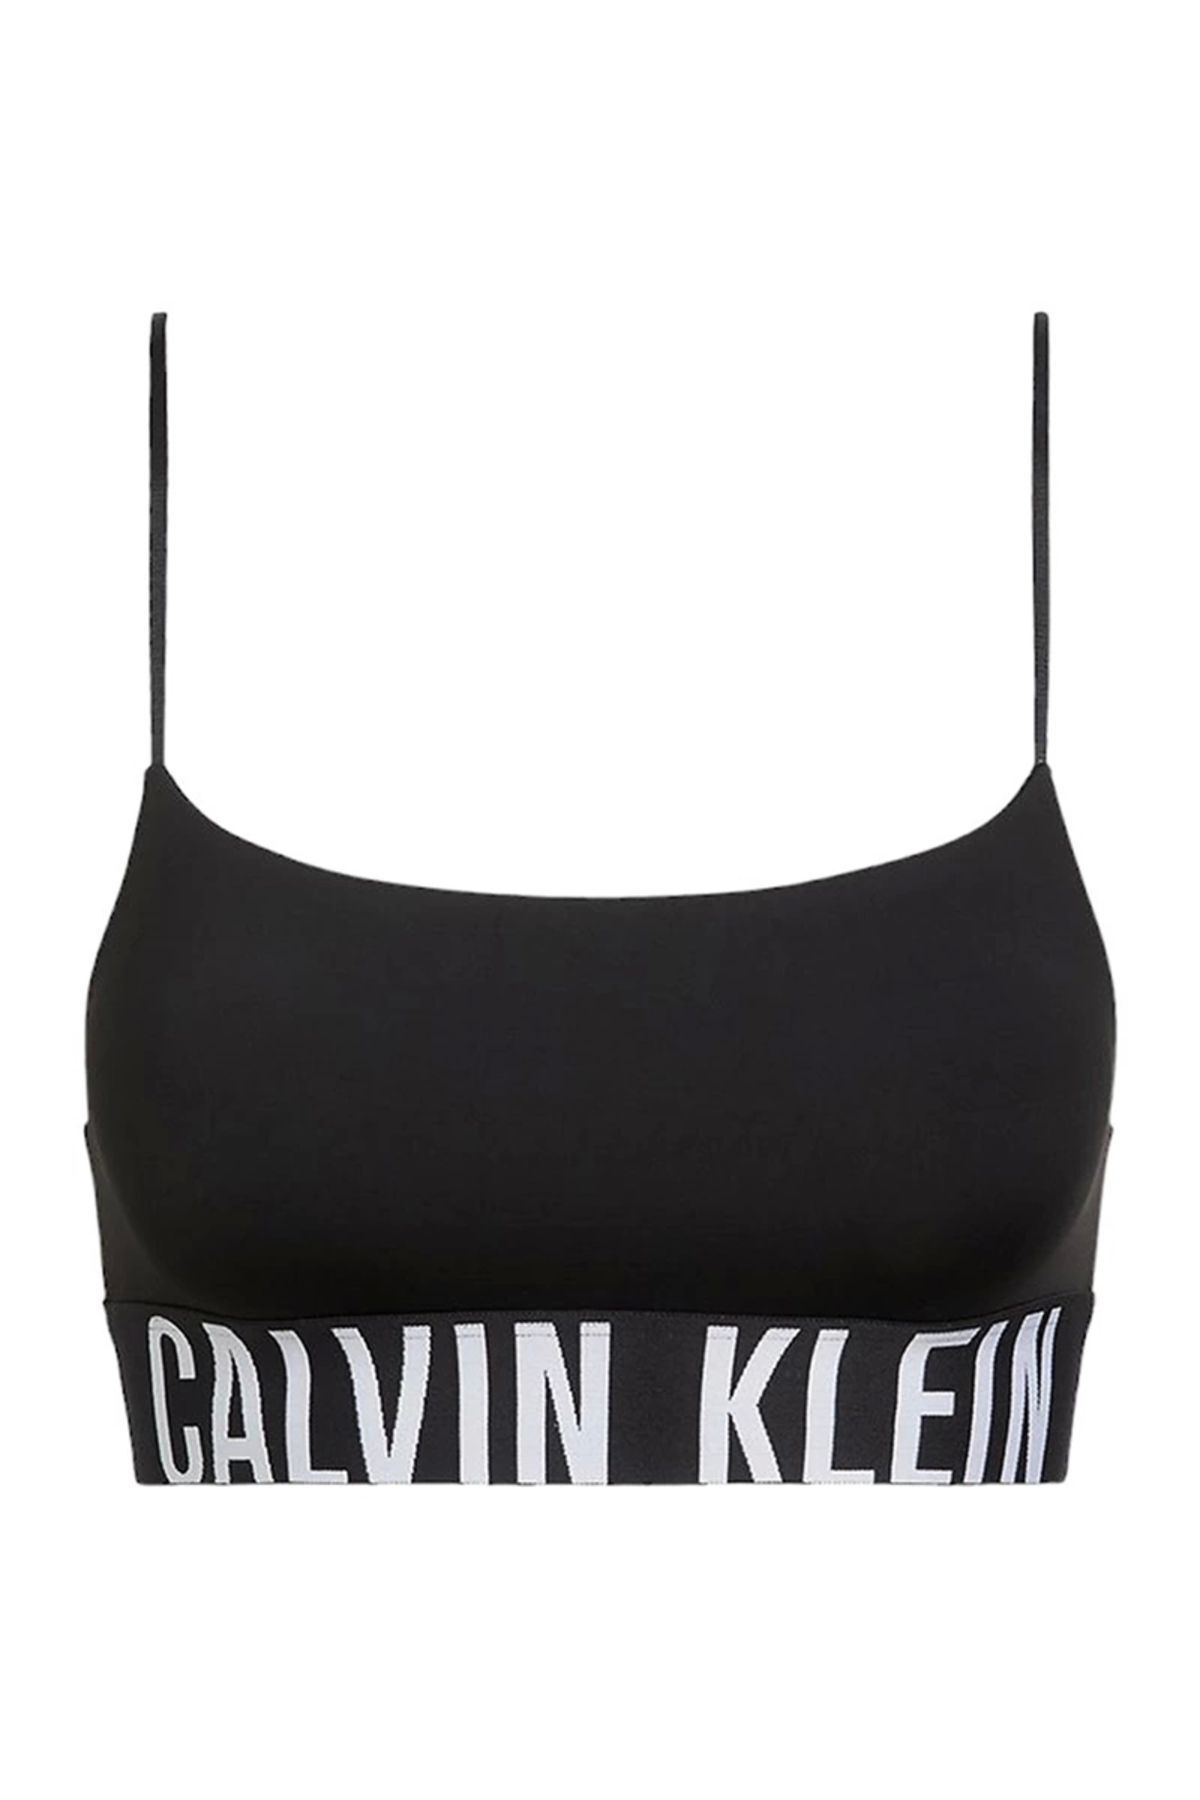 Calvin Klein Kadın Bralet